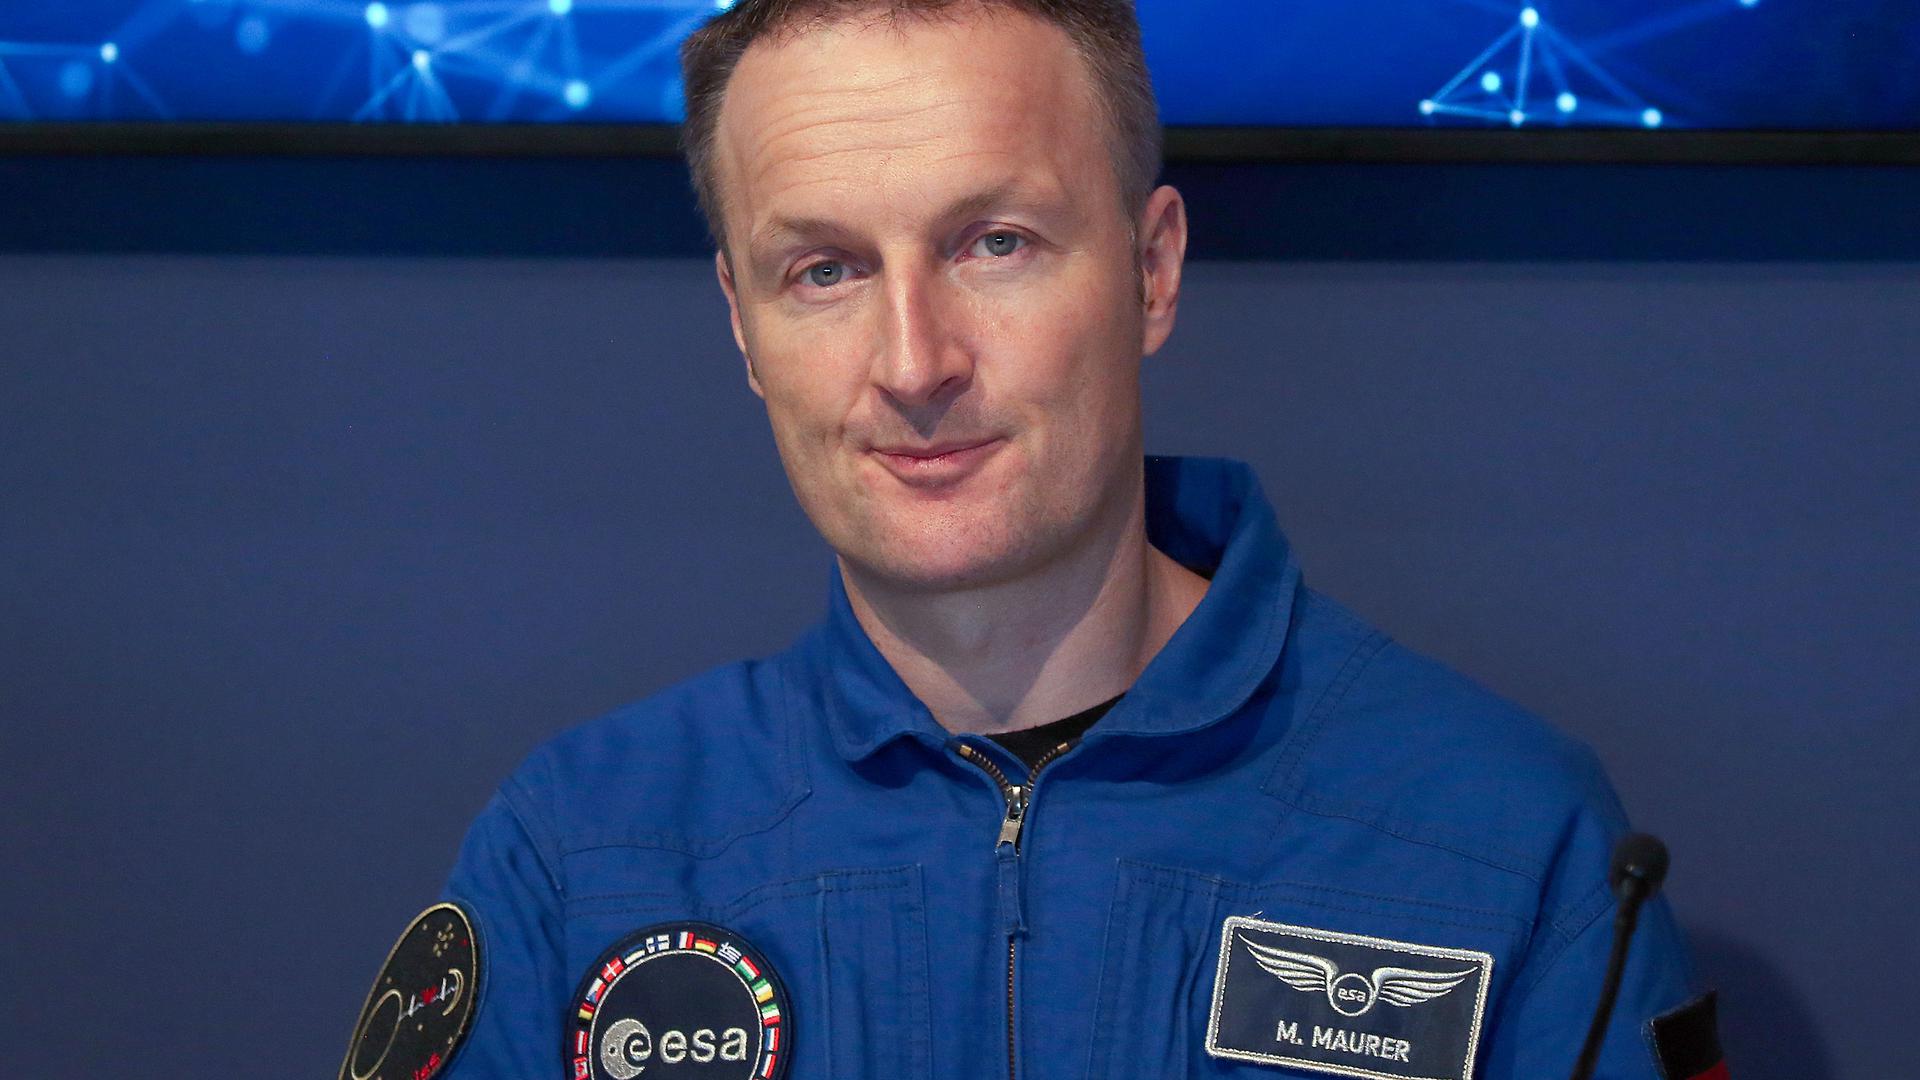 O astronauta Matthias Maurer, da Agência Espacial Europeia, vai estar no Luxemburgo em setembro.